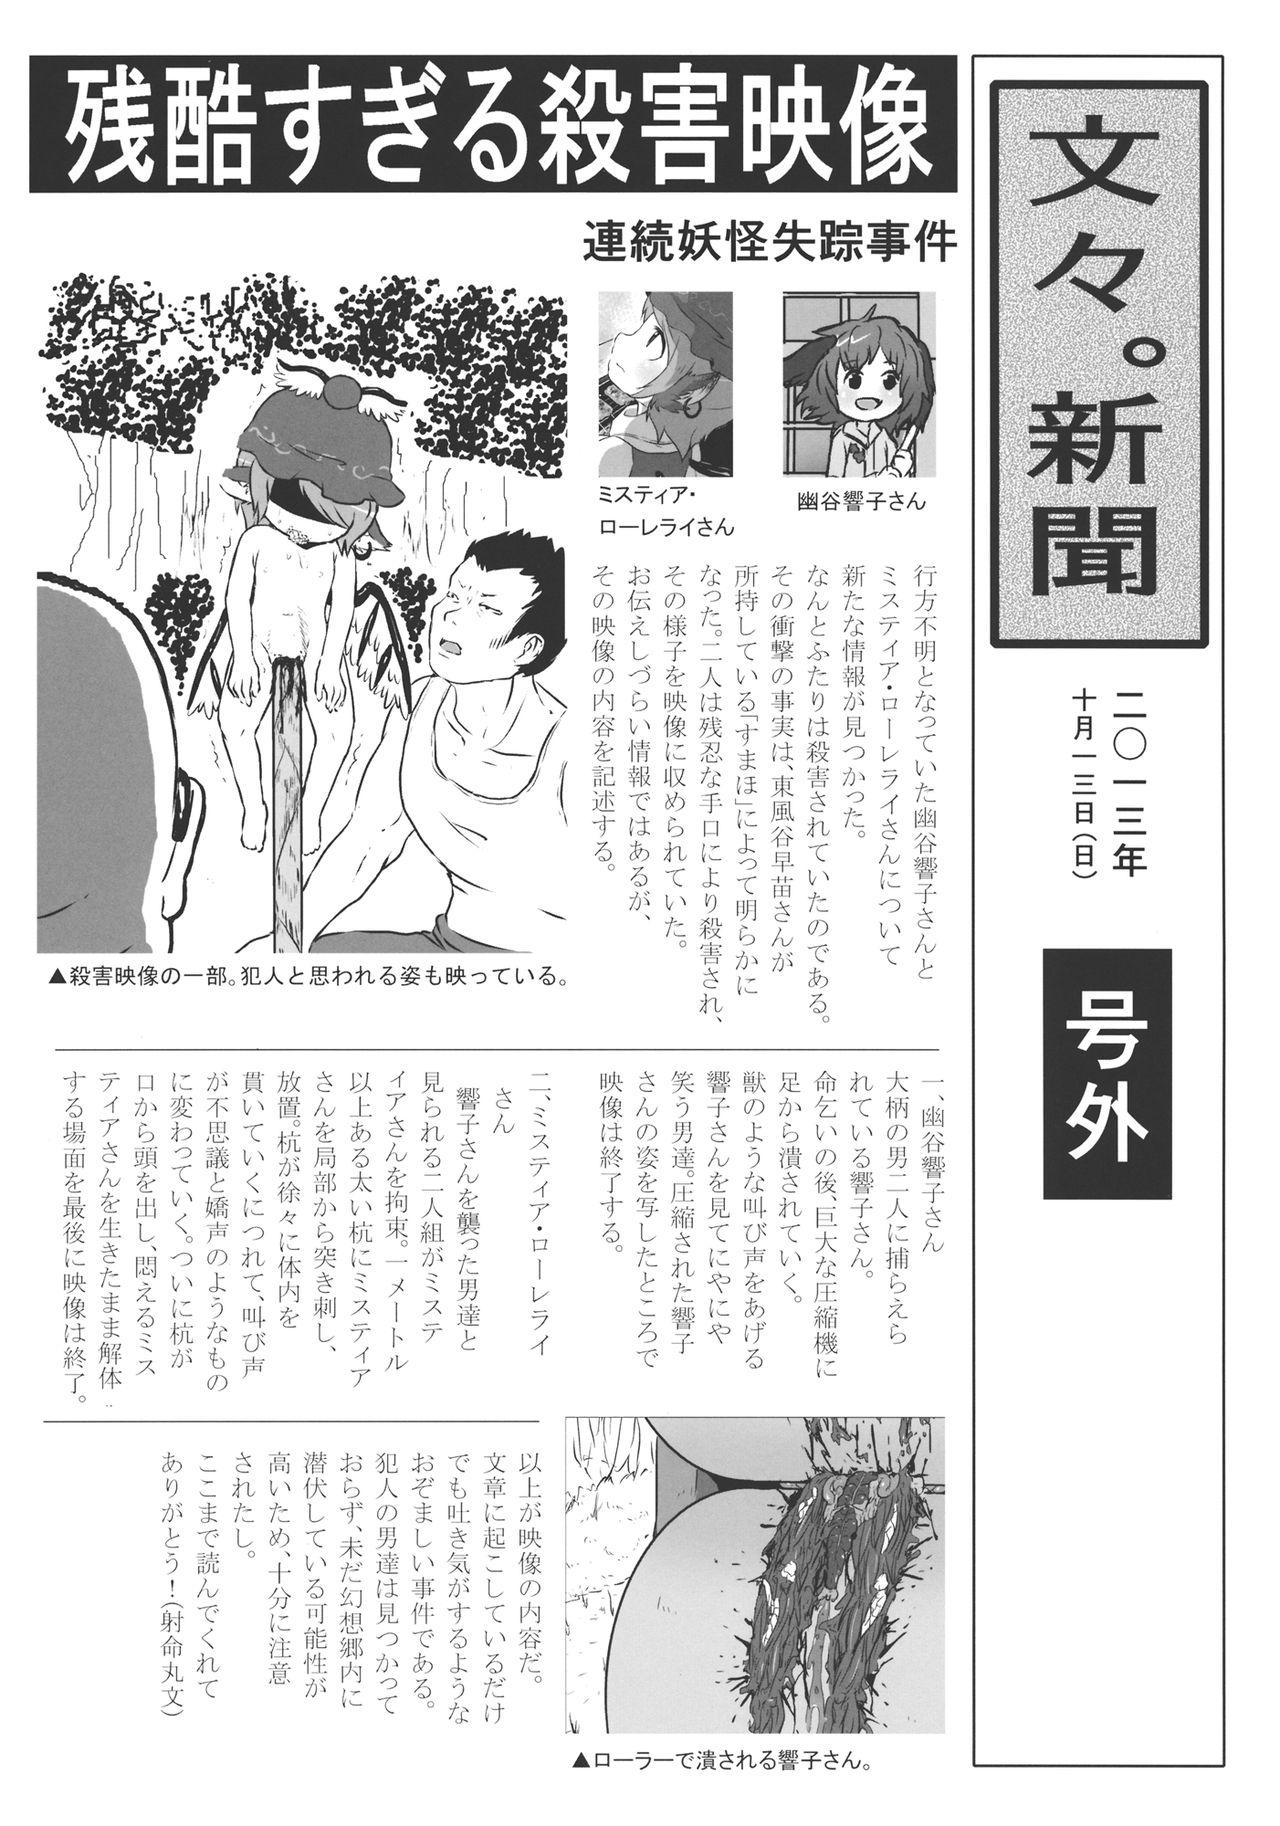 Big Butt (Kouroumu 9) [02 (Harasaki)] (Kojin Satsuei)(Touhou)(Kouroumu 9)[02] Touhou snuff vol.3 Kawashiro Nitori (Mushuusei) (Loli-kei Youjo no Kirei na Hadaka wo Suki Houdai shichai mashita!).avi (Touhou Project) [布洛基个人汉化] - Touhou project Compilat - Page 4